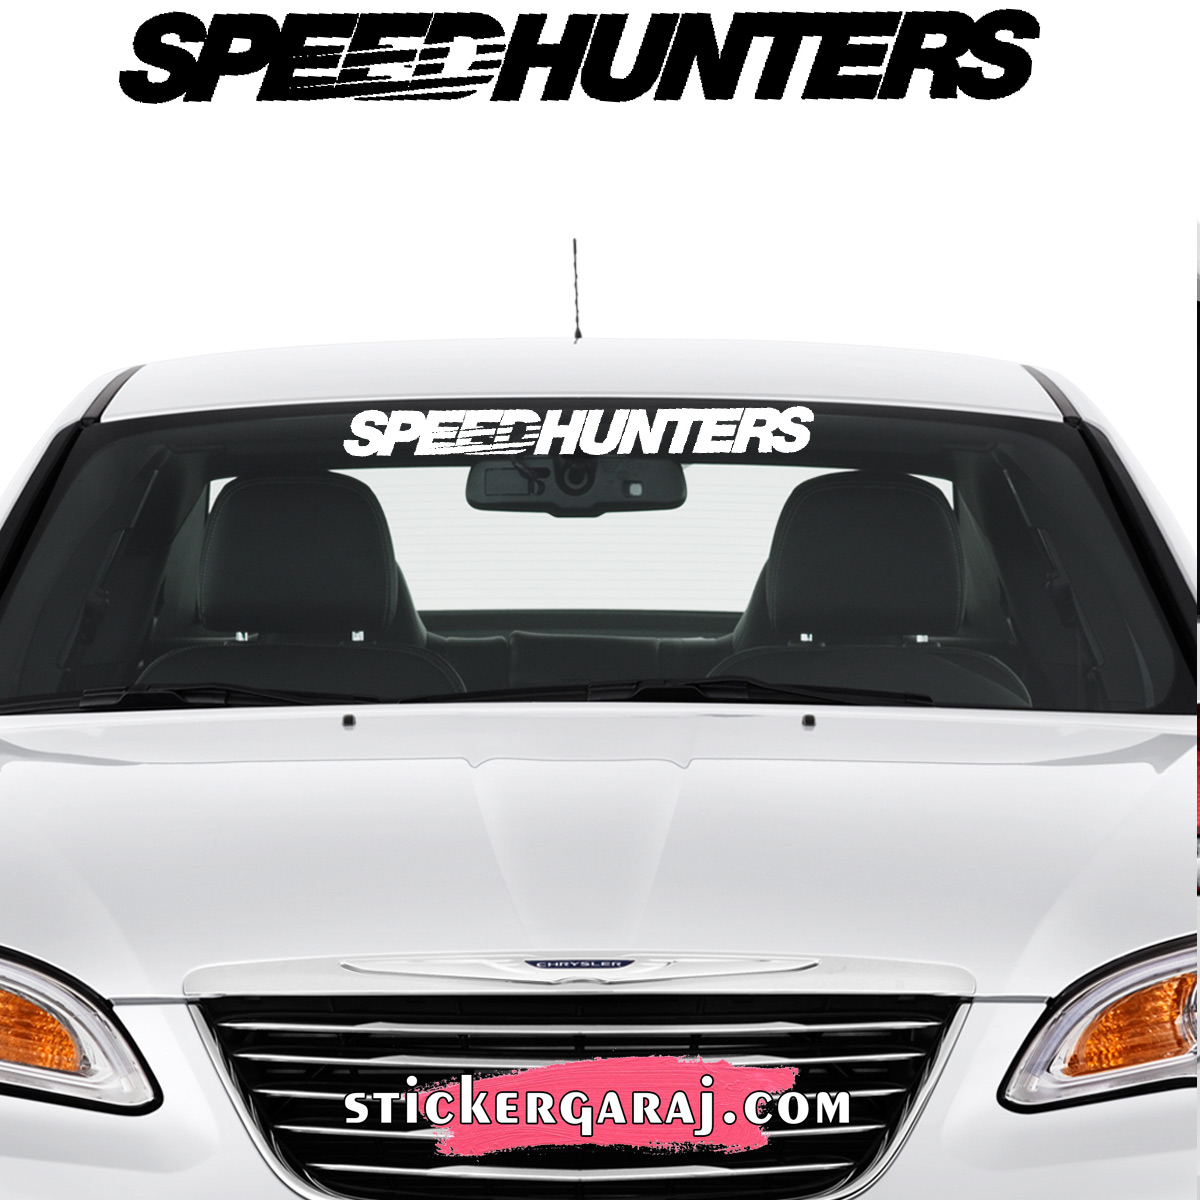 Dacia oto sticker - Dacia cam sticker - speedhunters